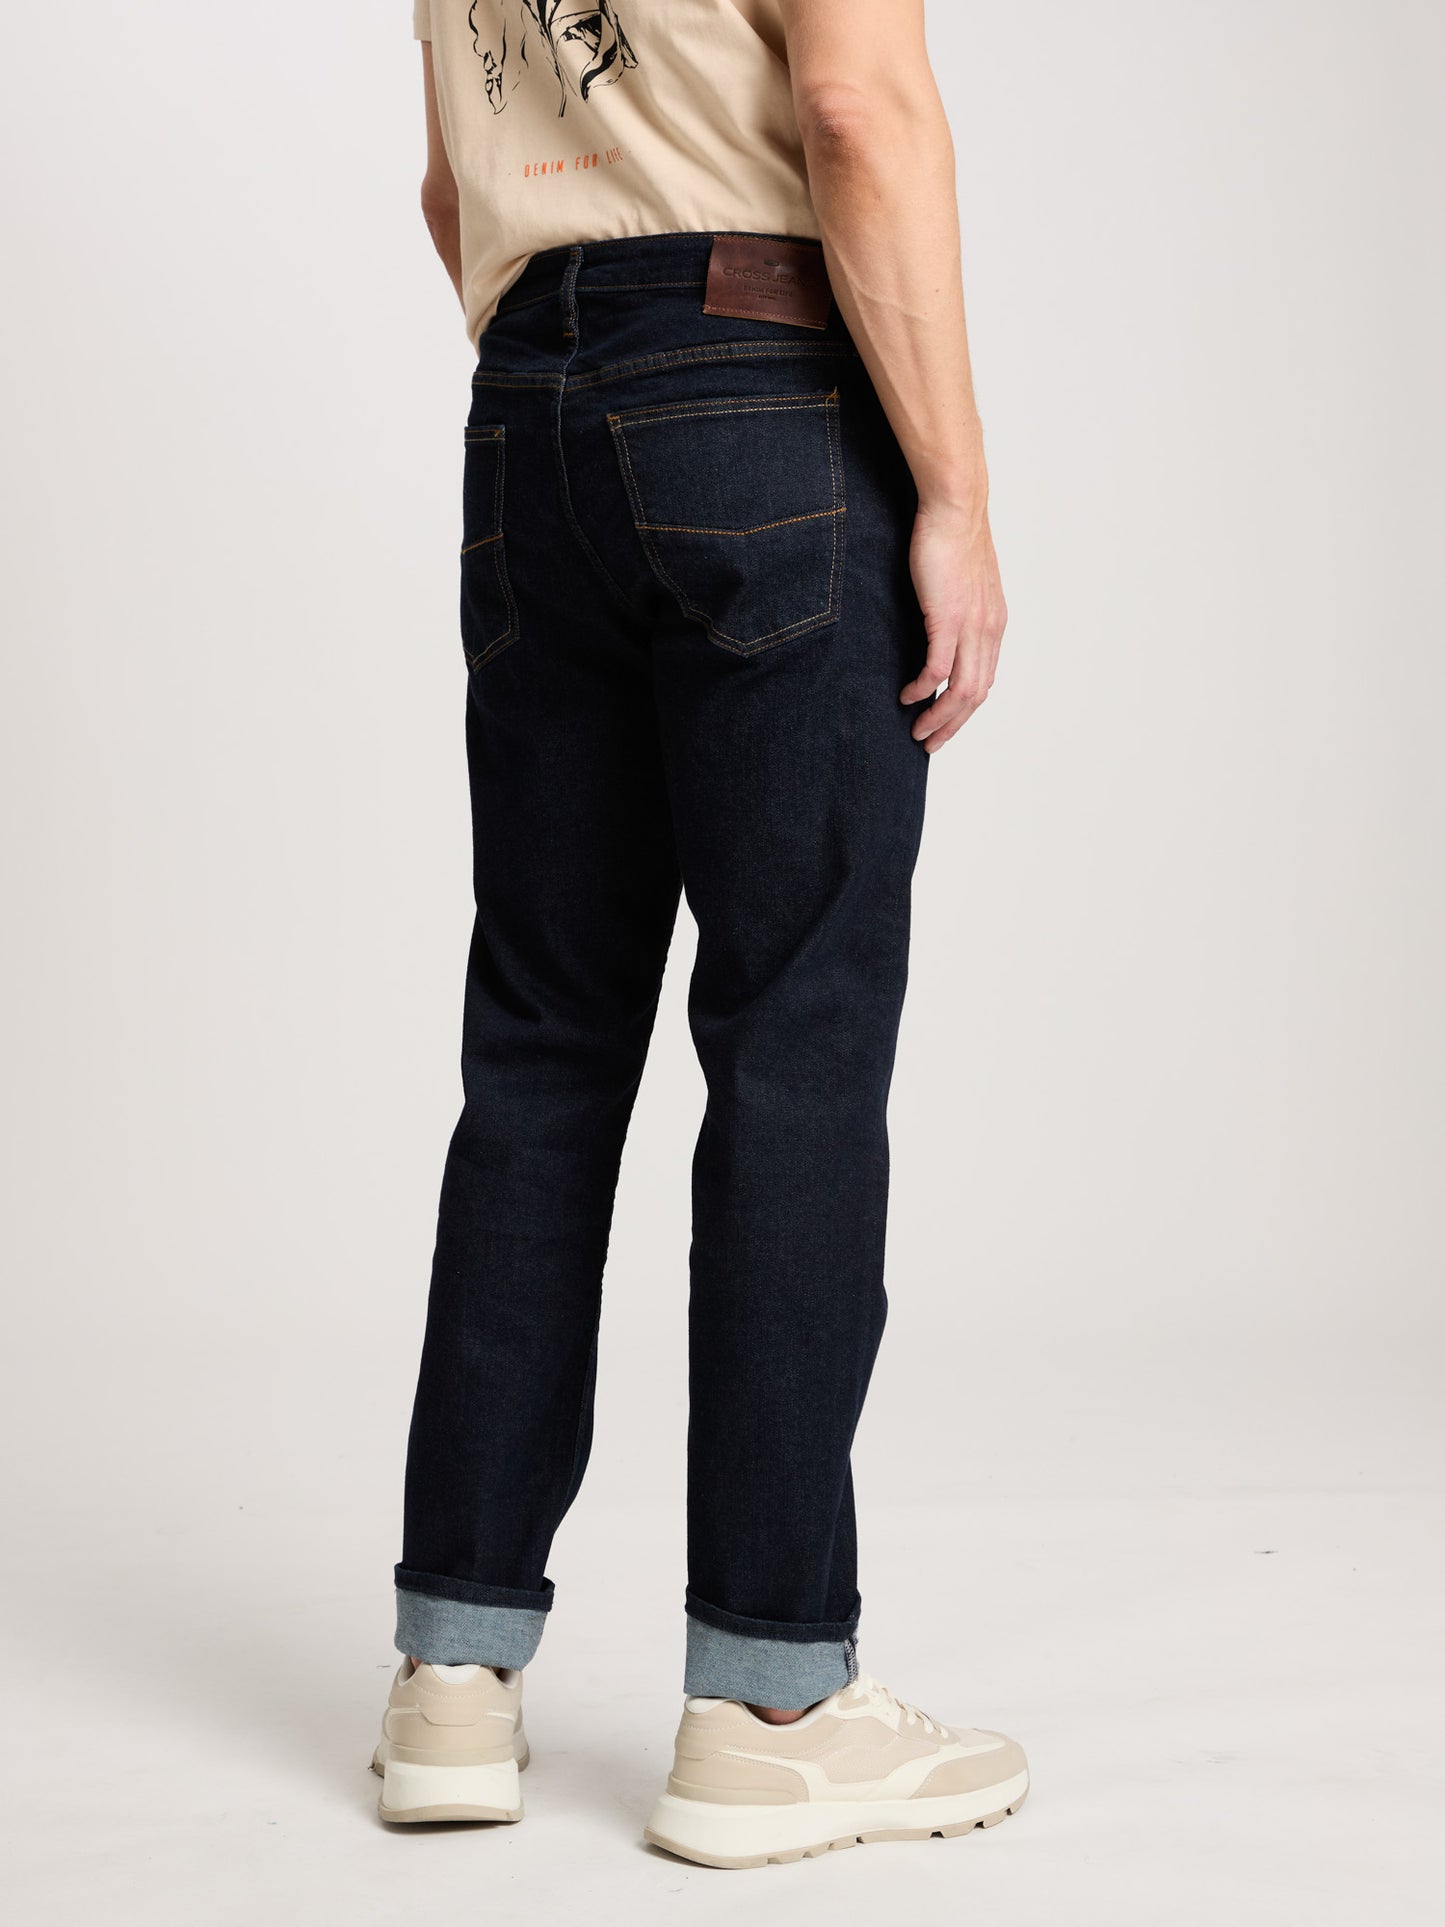 Damien men's jeans slim fit regular waist straight leg rinsed